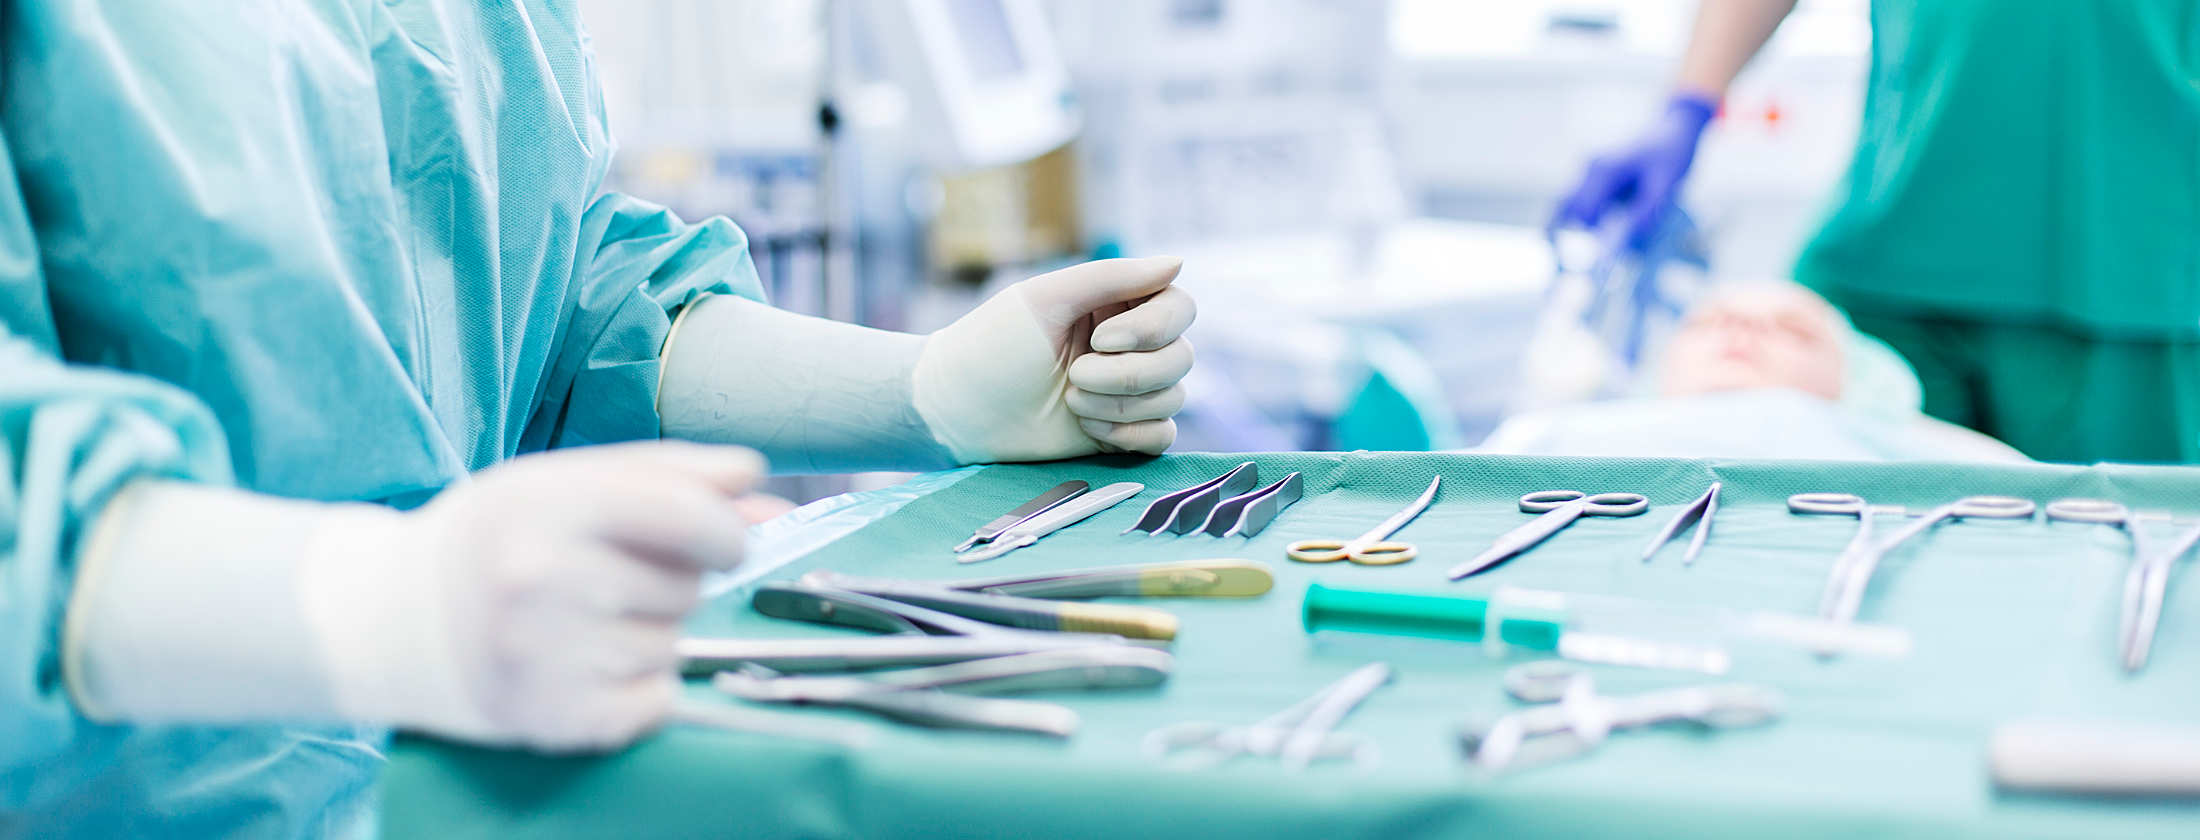 Operation eines Unfallpatienten in der Frankfurter Privatklinik. Im Hintergrund liegt eine betäubte Patientin. Im Vordergrund lehnt eine Medizinische Fachangestellte ihre Hände an einen OP-Tisch. Darauf sind viele chirurgische Instrumente zu sehen.